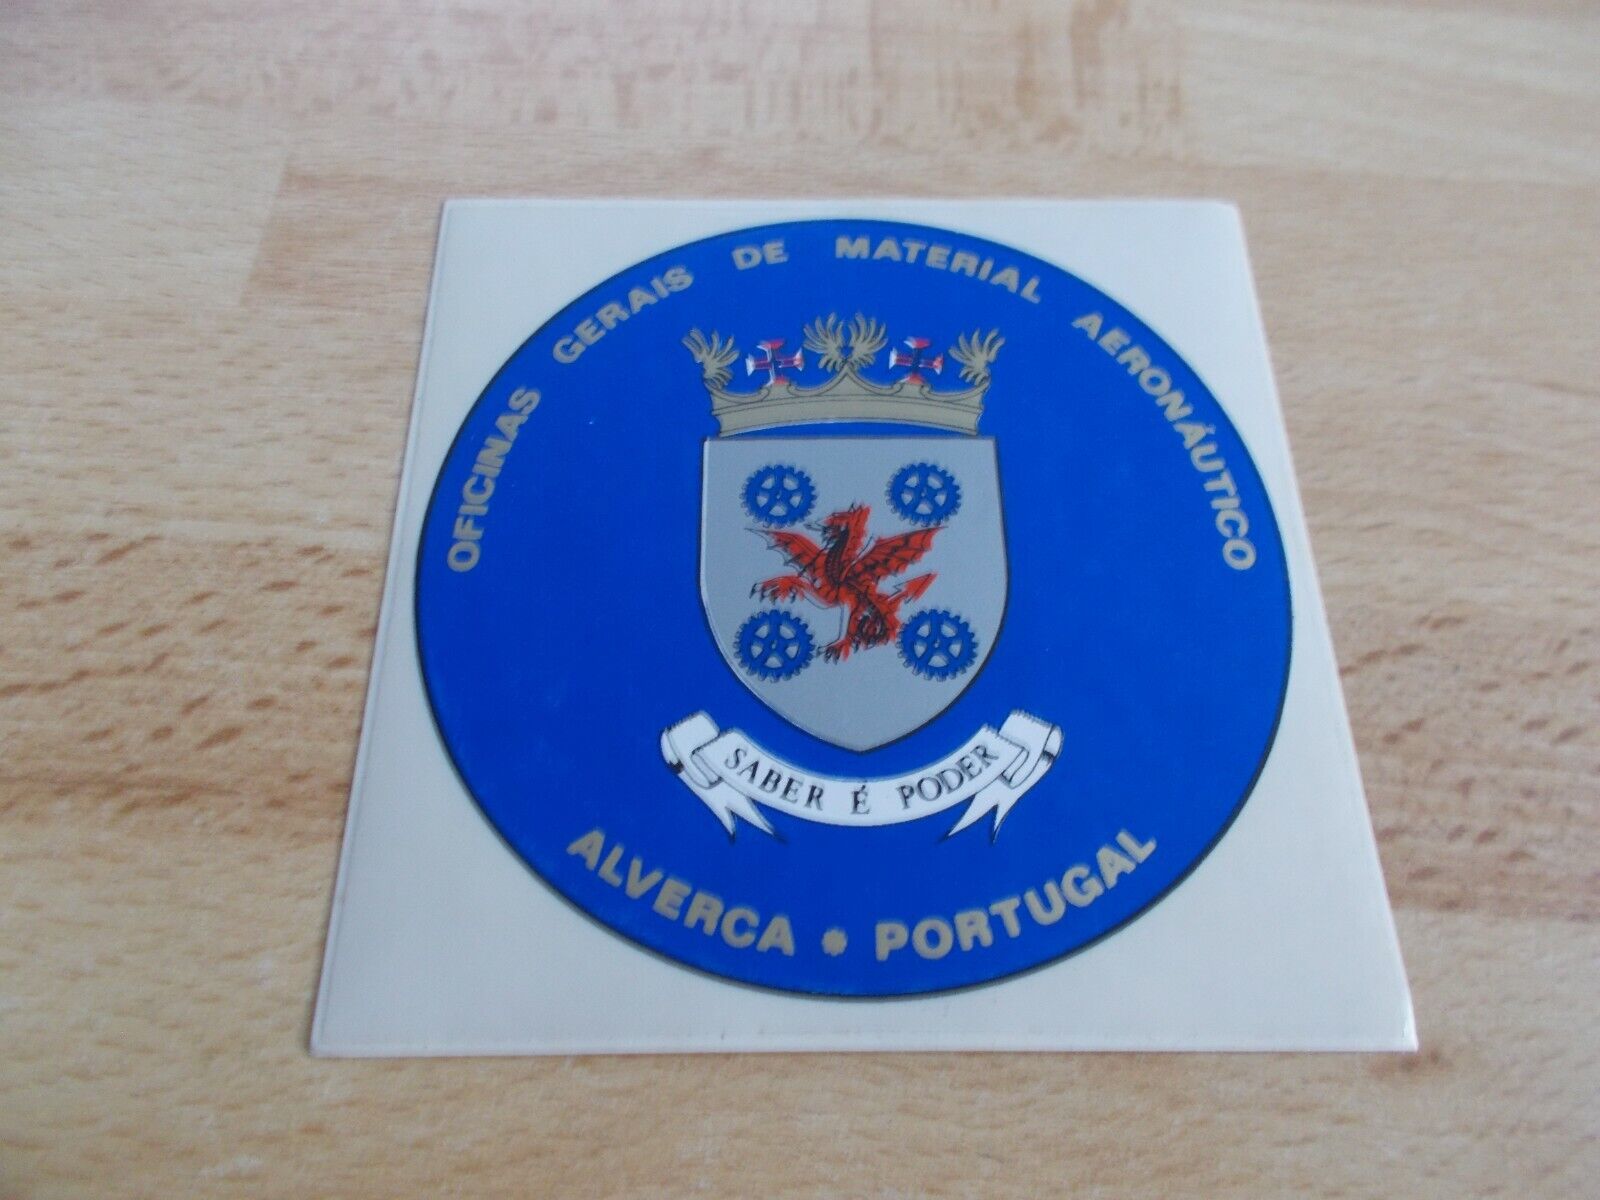 Sticker Oficinas Gerais Of Material Aeronautico - Alverca Portugal